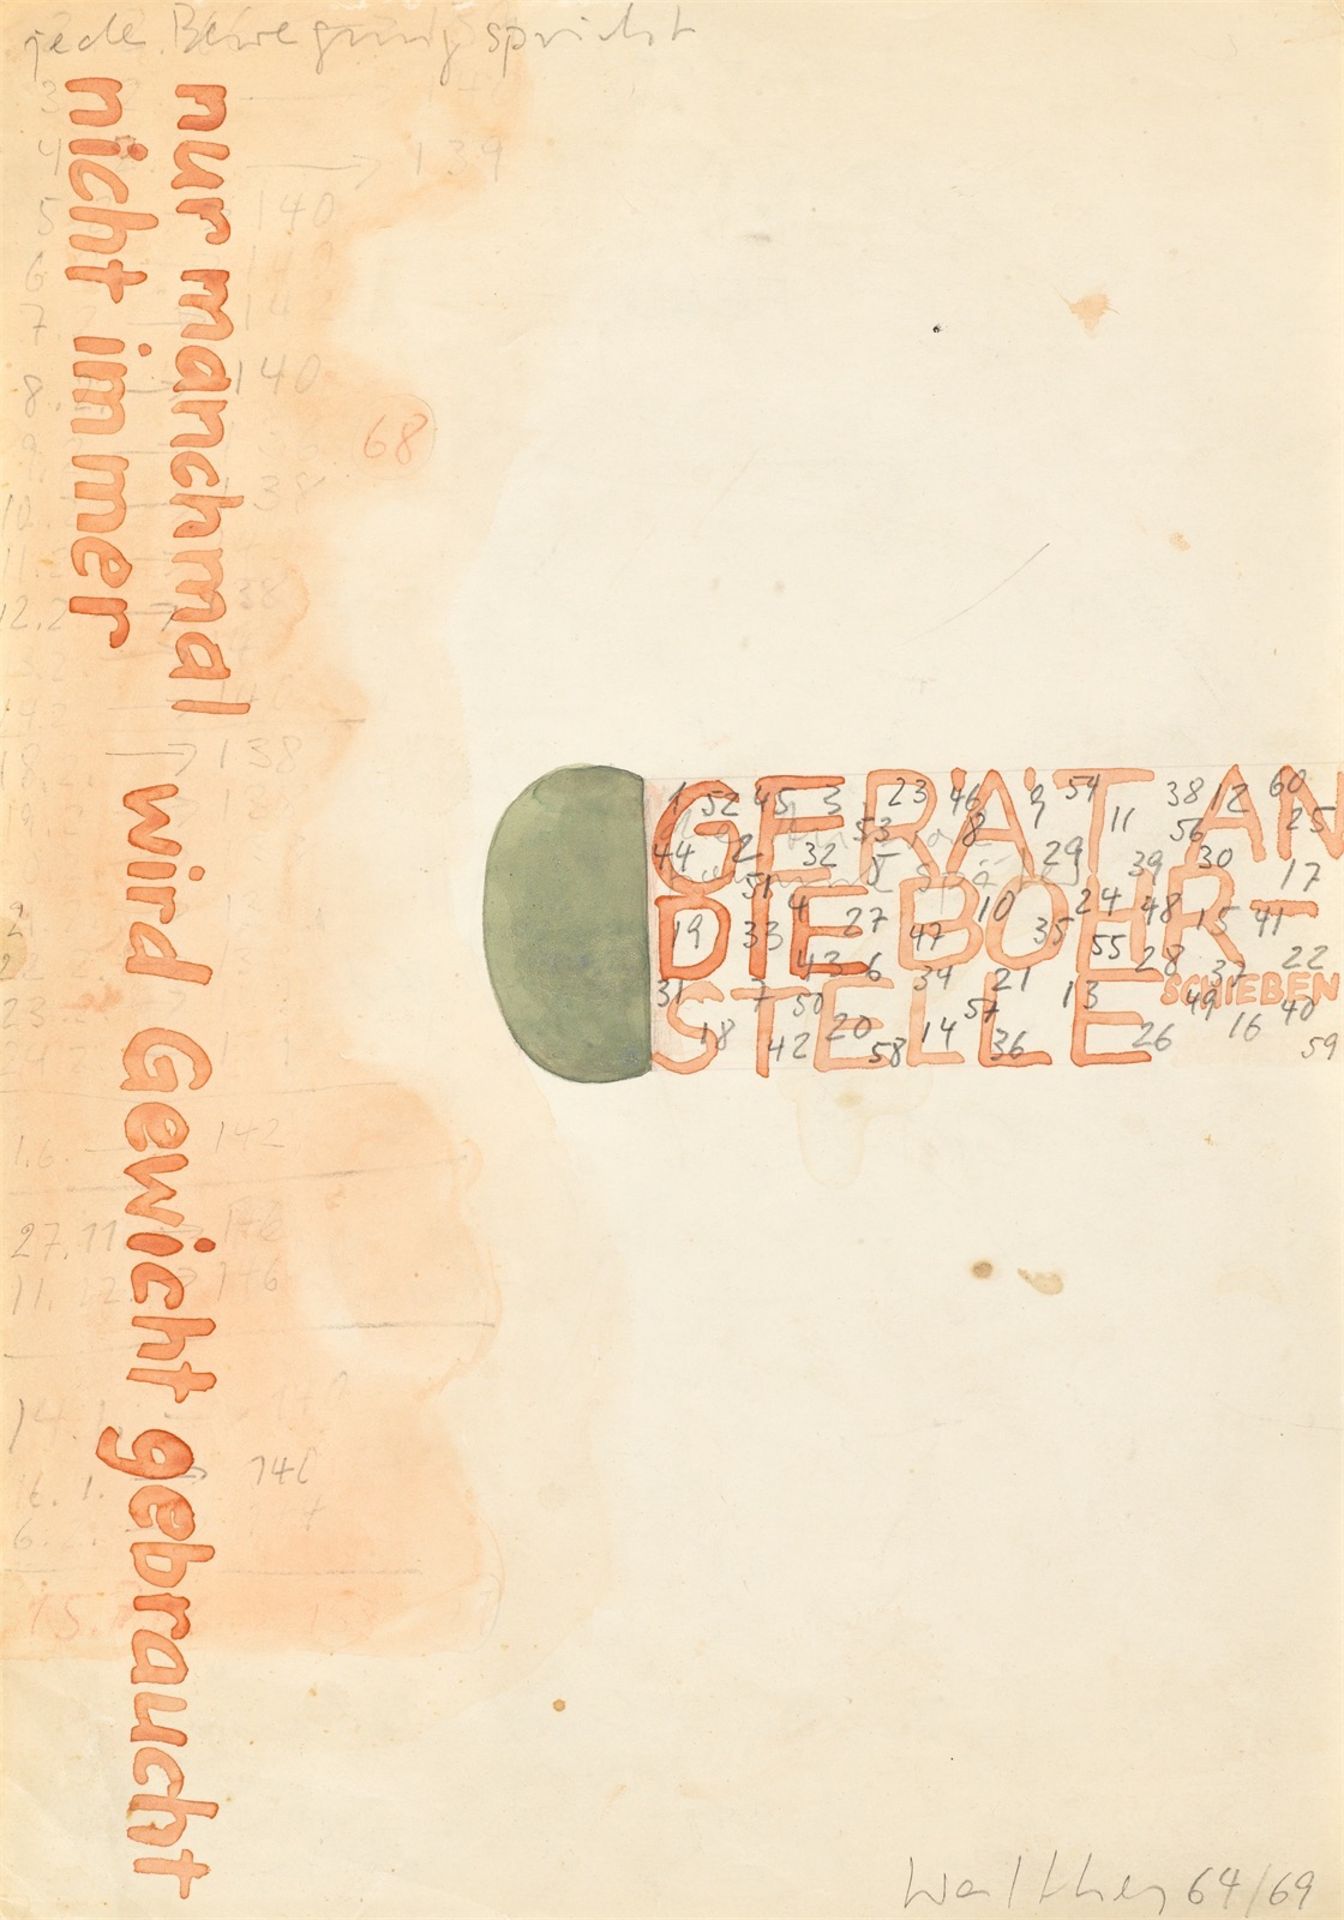 Franz Erhard Walther. ”Die Bewegung entfaltet den Begriff” / ”jede Bewegung spri…. 1969/71 / 1964/69 - Image 2 of 7